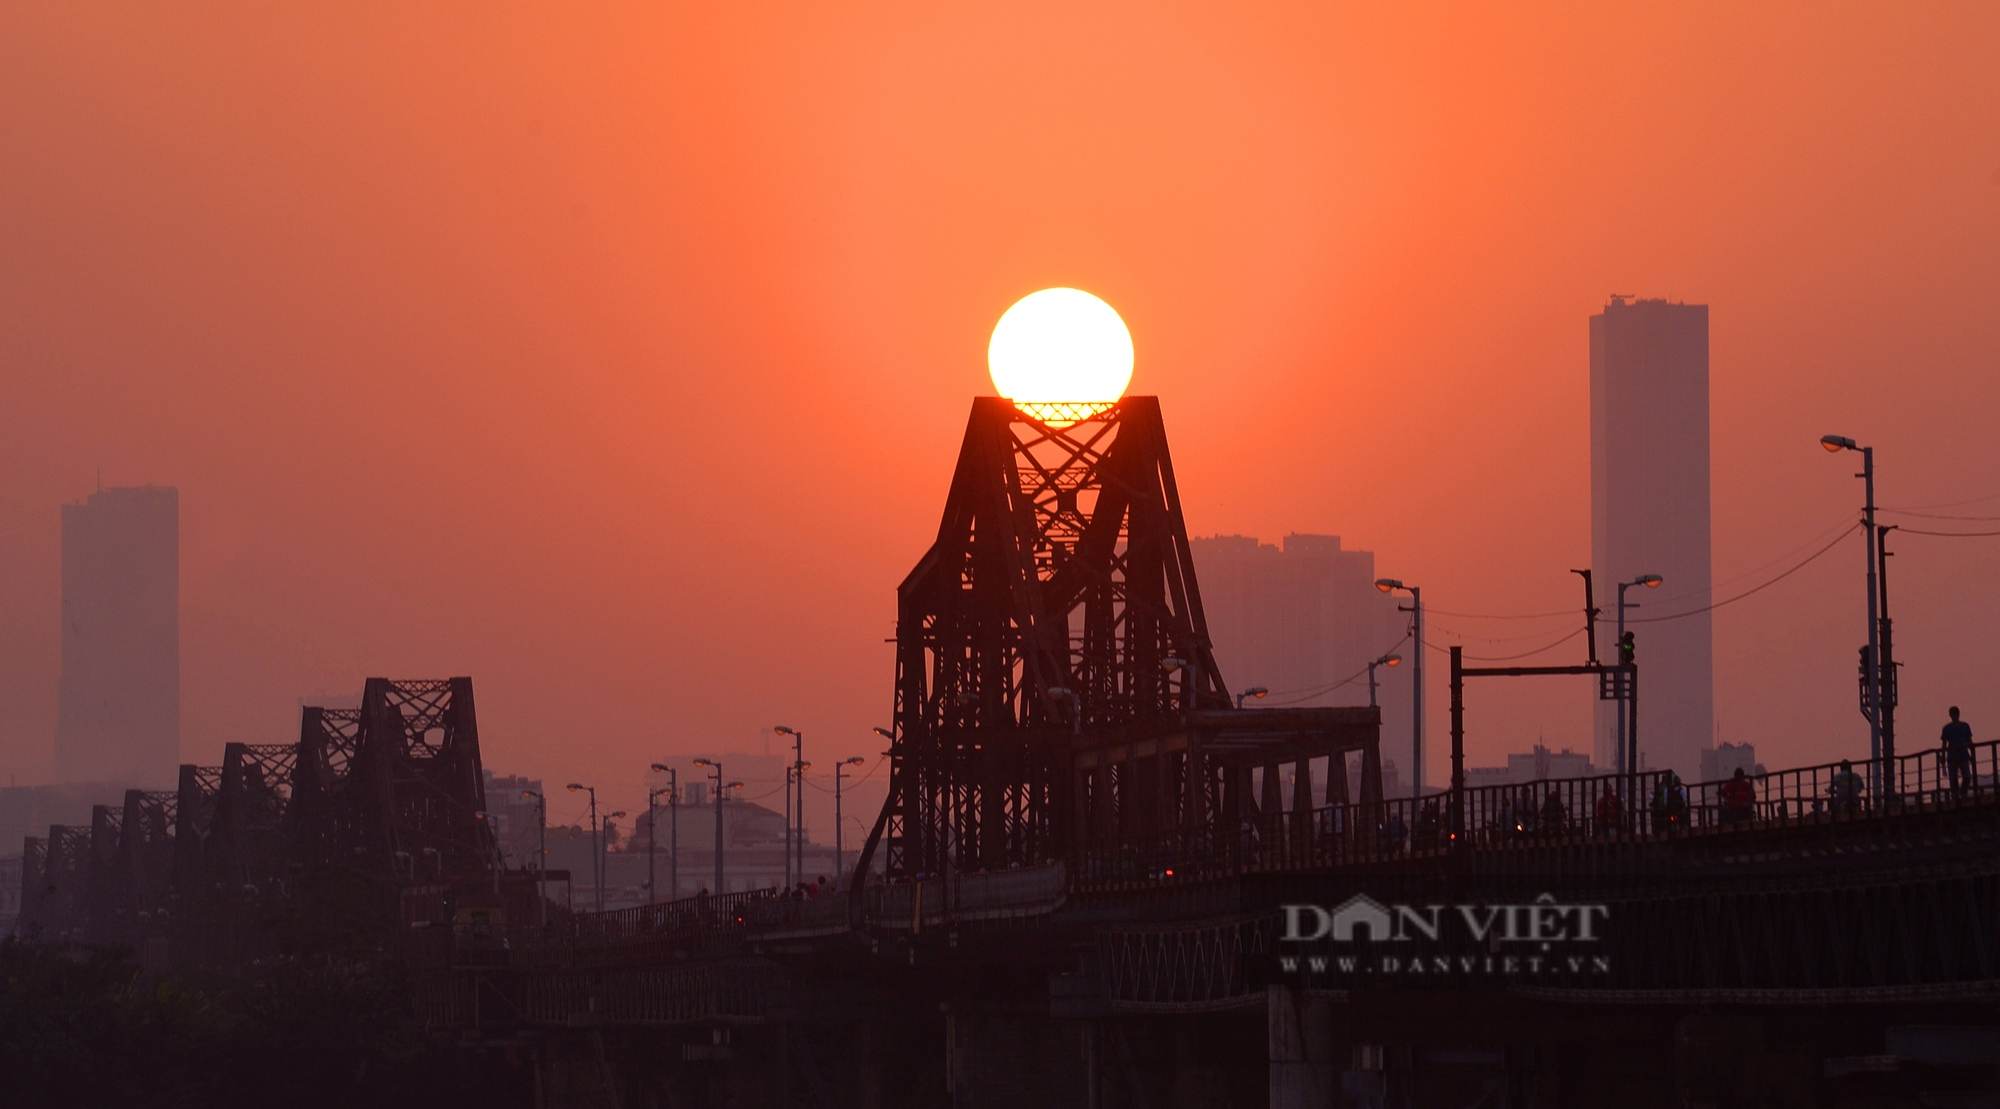 Cầu Long Biên đẹp rực rỡ dưới ánh nắng chiều thu - Ảnh 7.